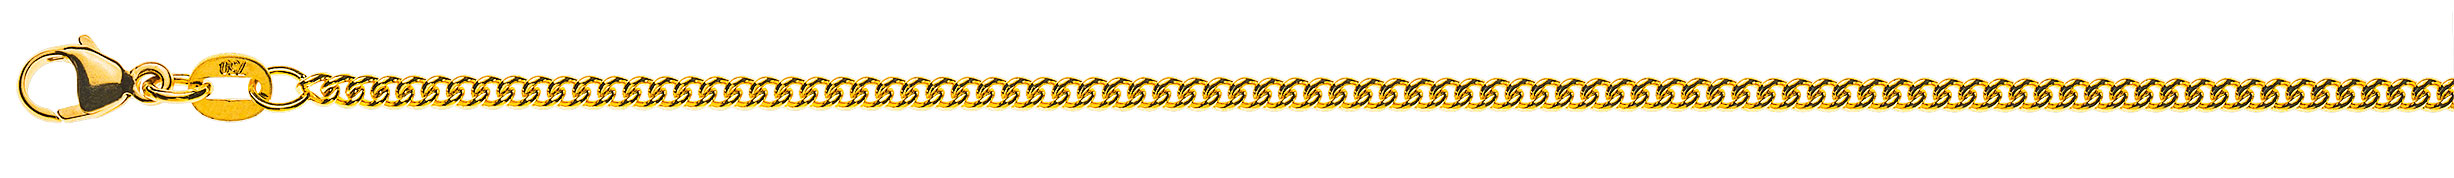 AURONOS Prestige Halskette Gelbgold 18K Rundpanzerkette 42cm 2.1mm